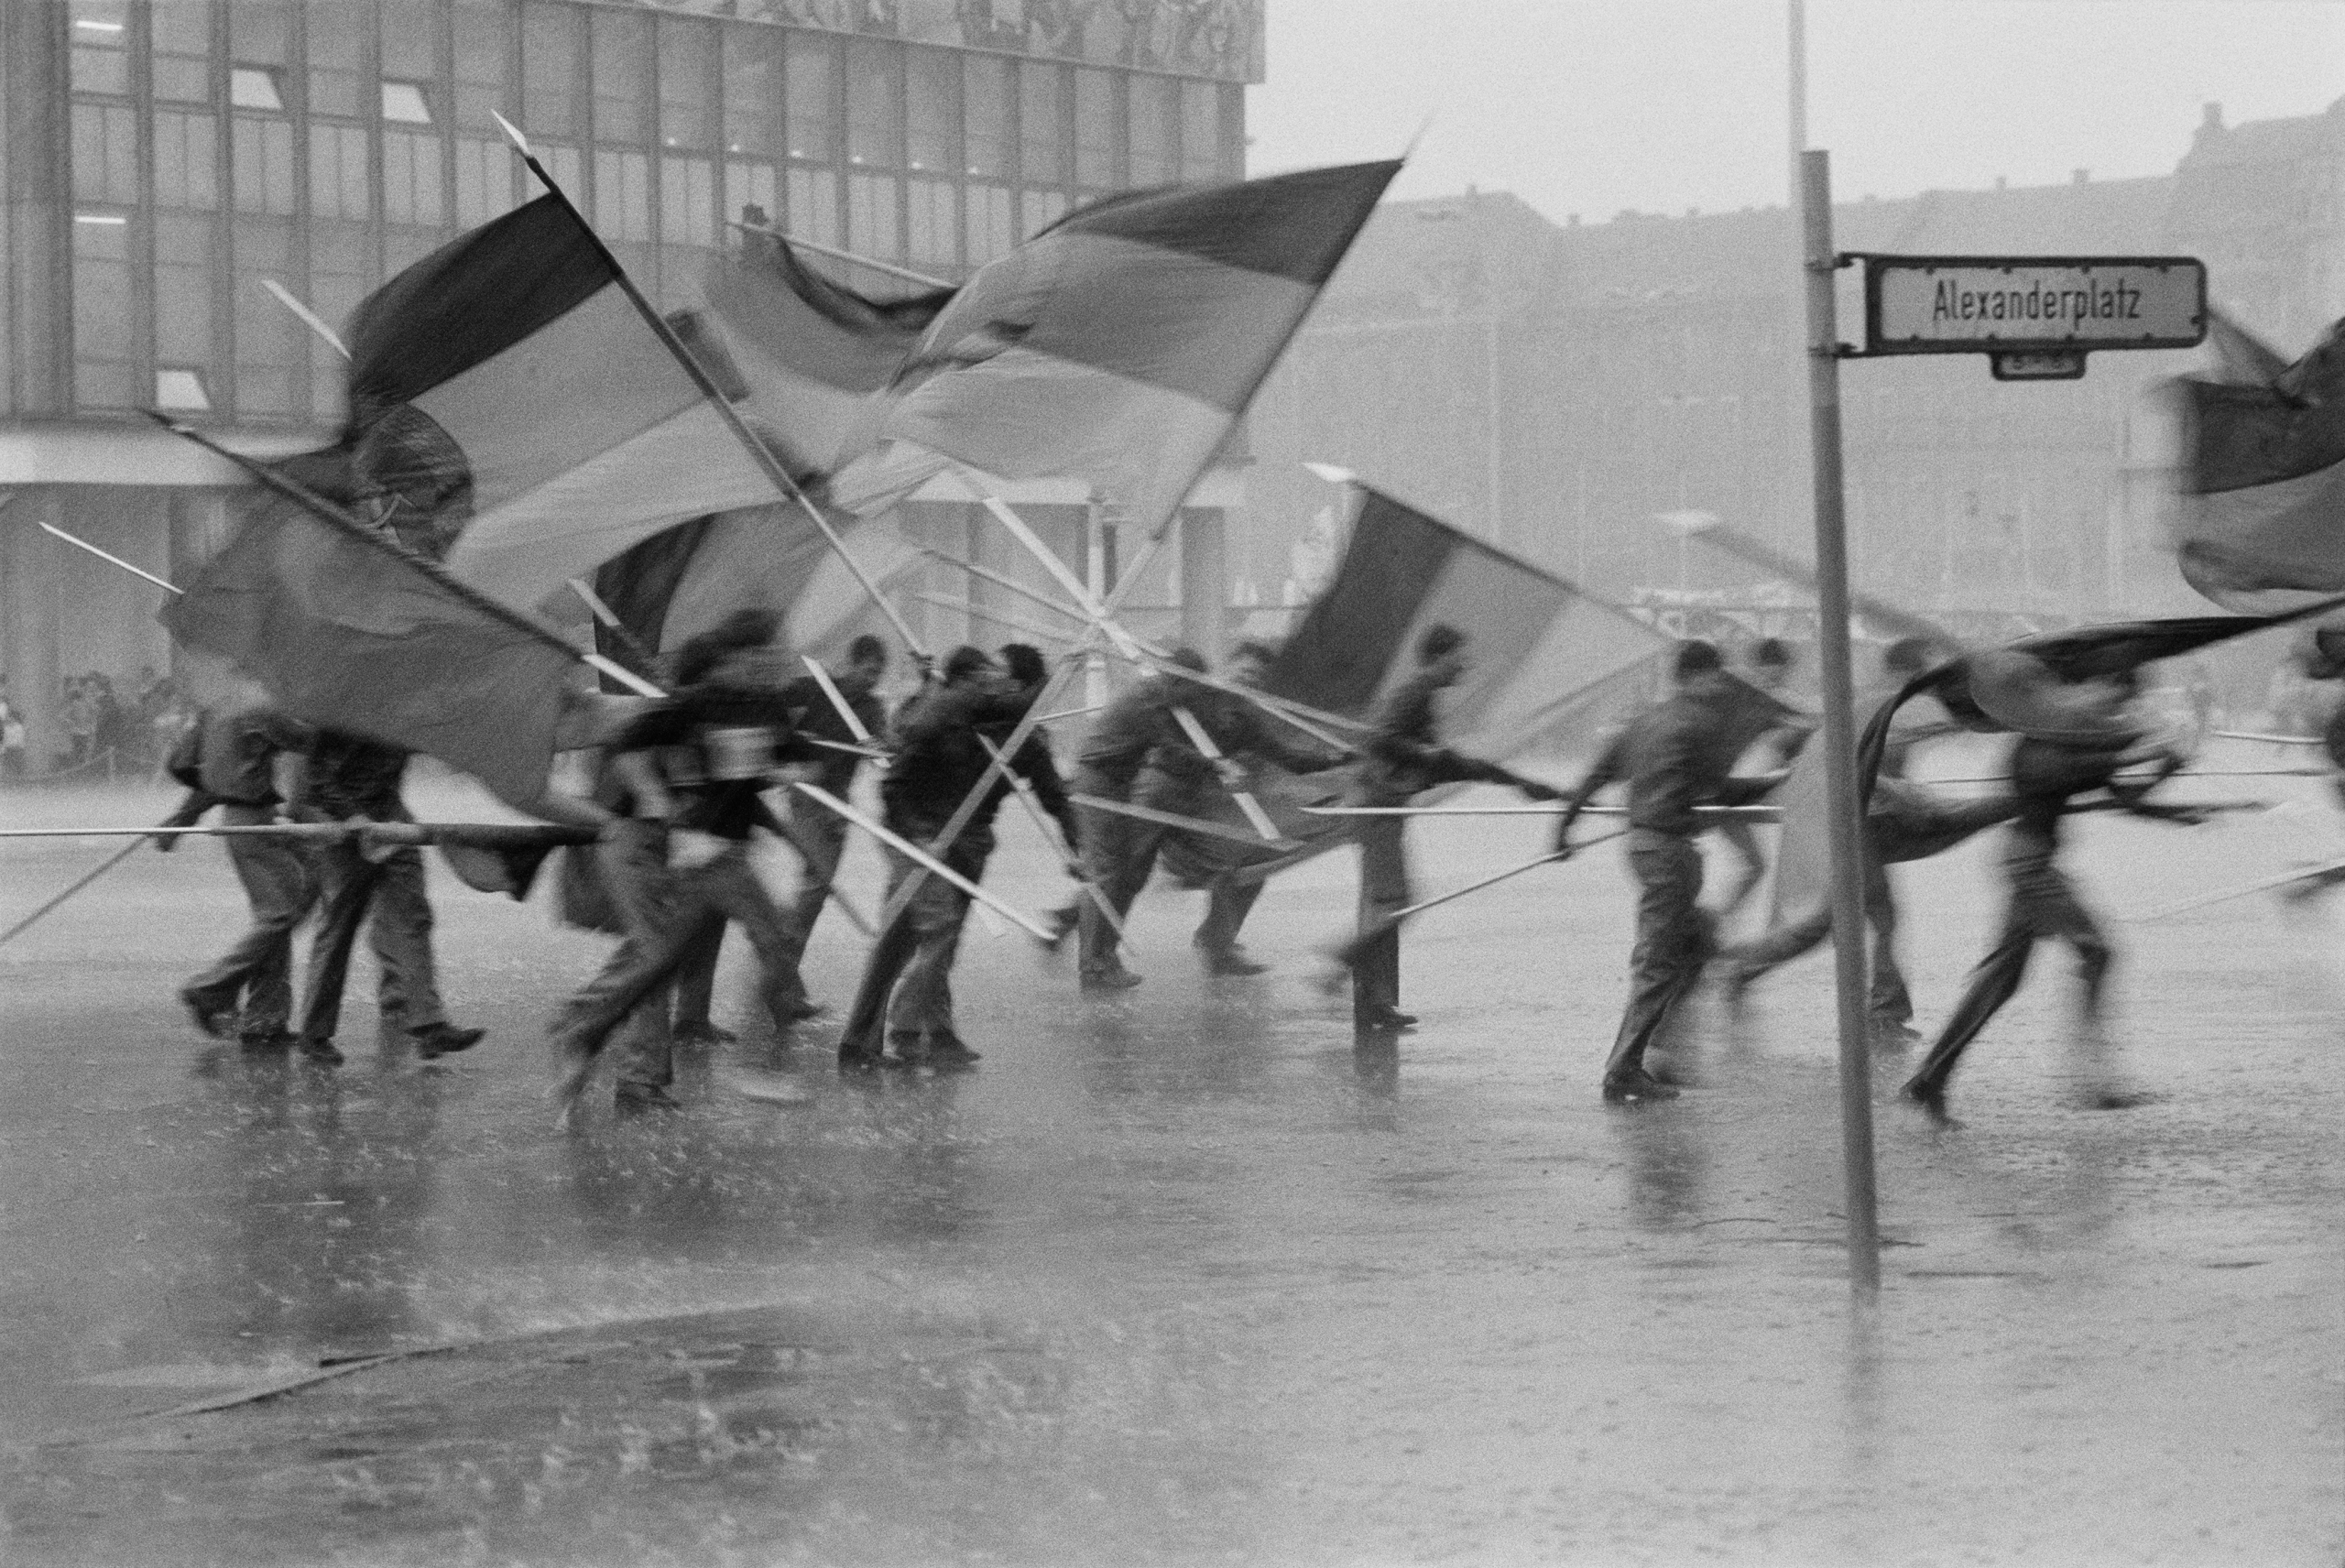 Harald Hauswald, "Fahnenflucht", 1. Mai Demonstration auf dem Alexanderplatz, Berlin-Mitte, 1987, DDR © Harald Hauswald/OSTKREUZ/Bundesstiftung Aufarbeitung